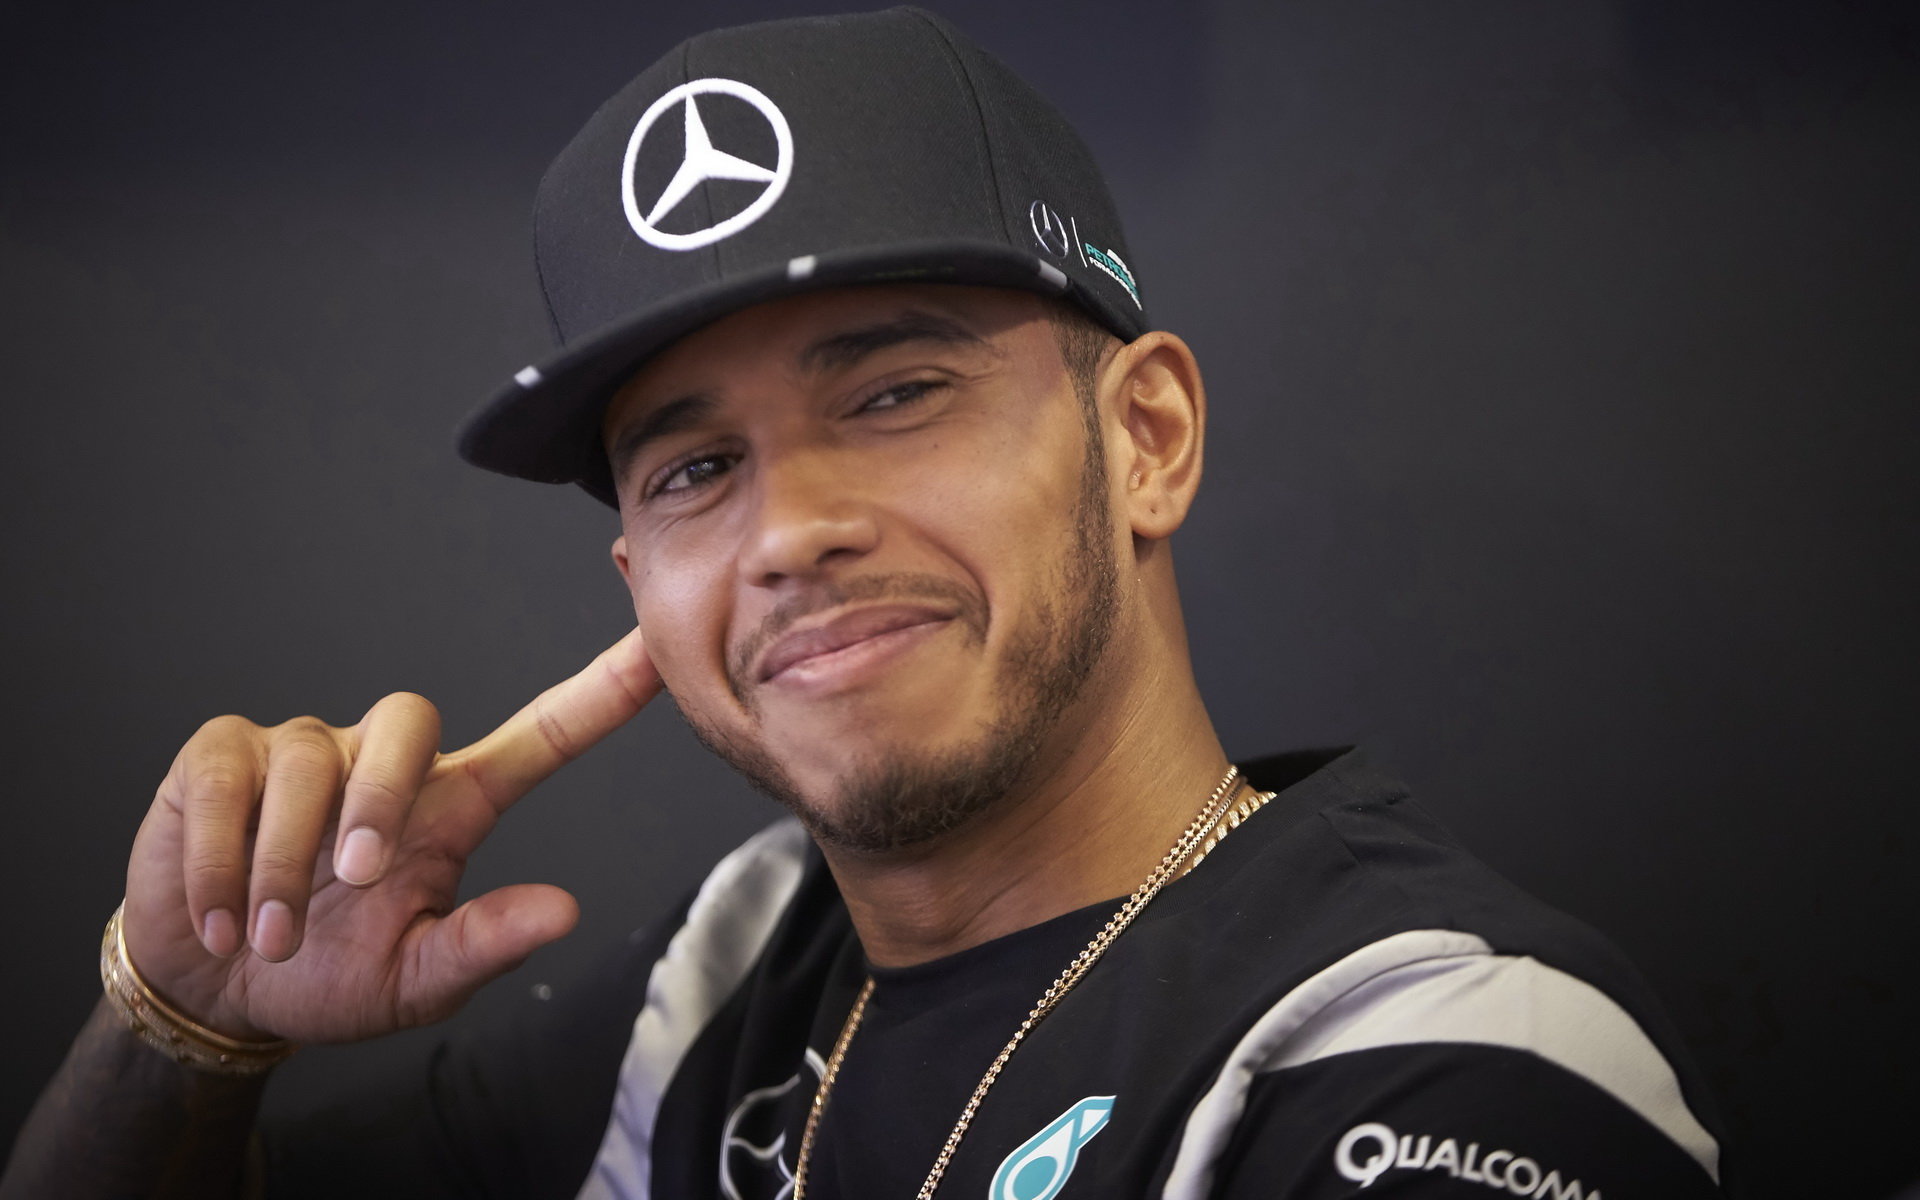 Lewis Hamilton vás nechá nahlédnout do své daleké budoucnosti